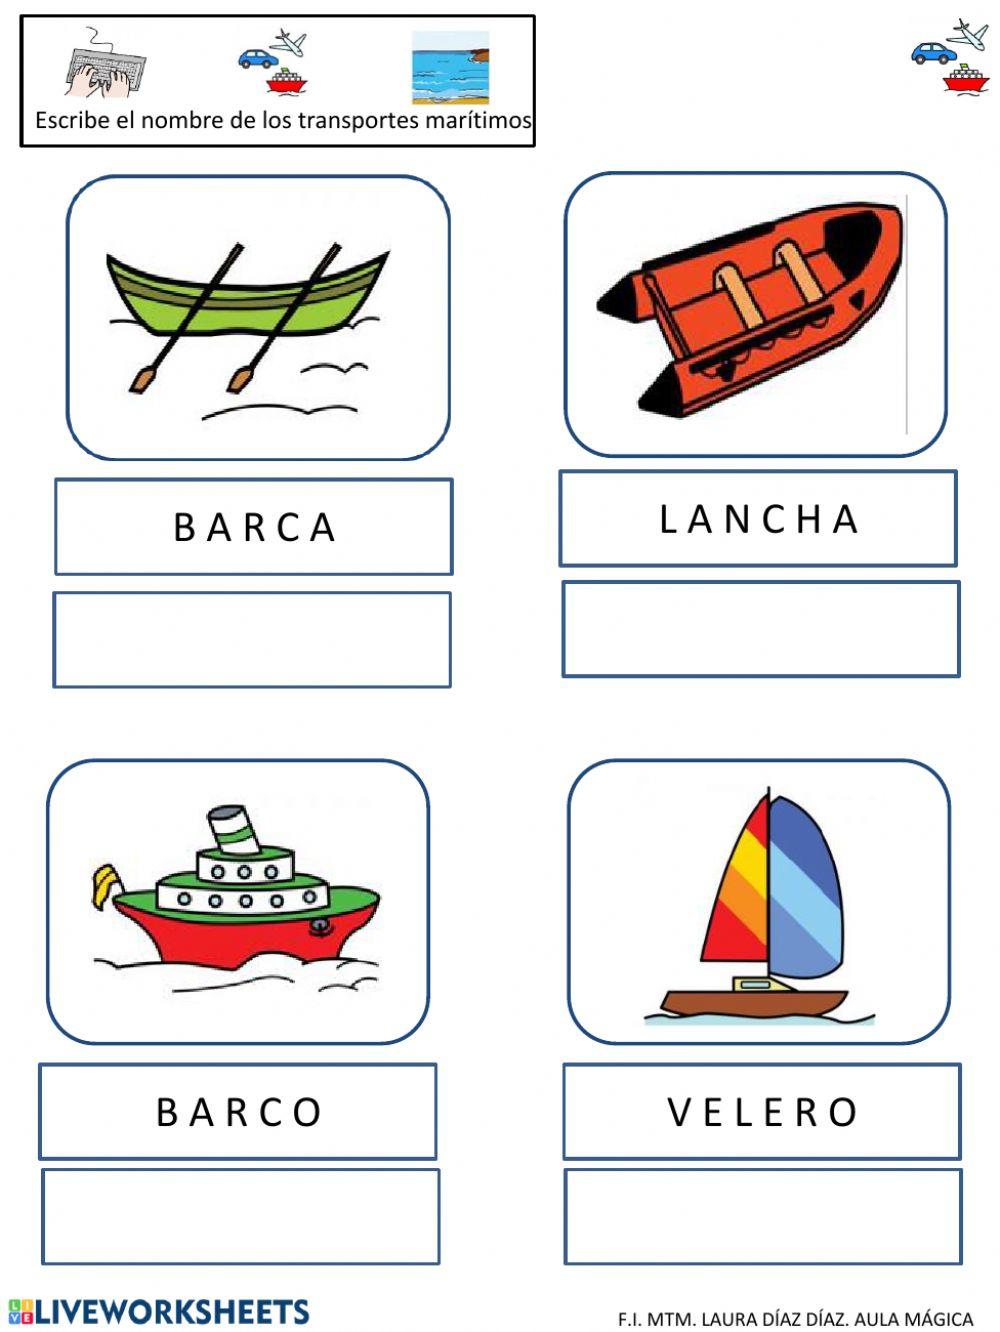 Medios de transportes marítimos interactive worksheet | Live Worksheets